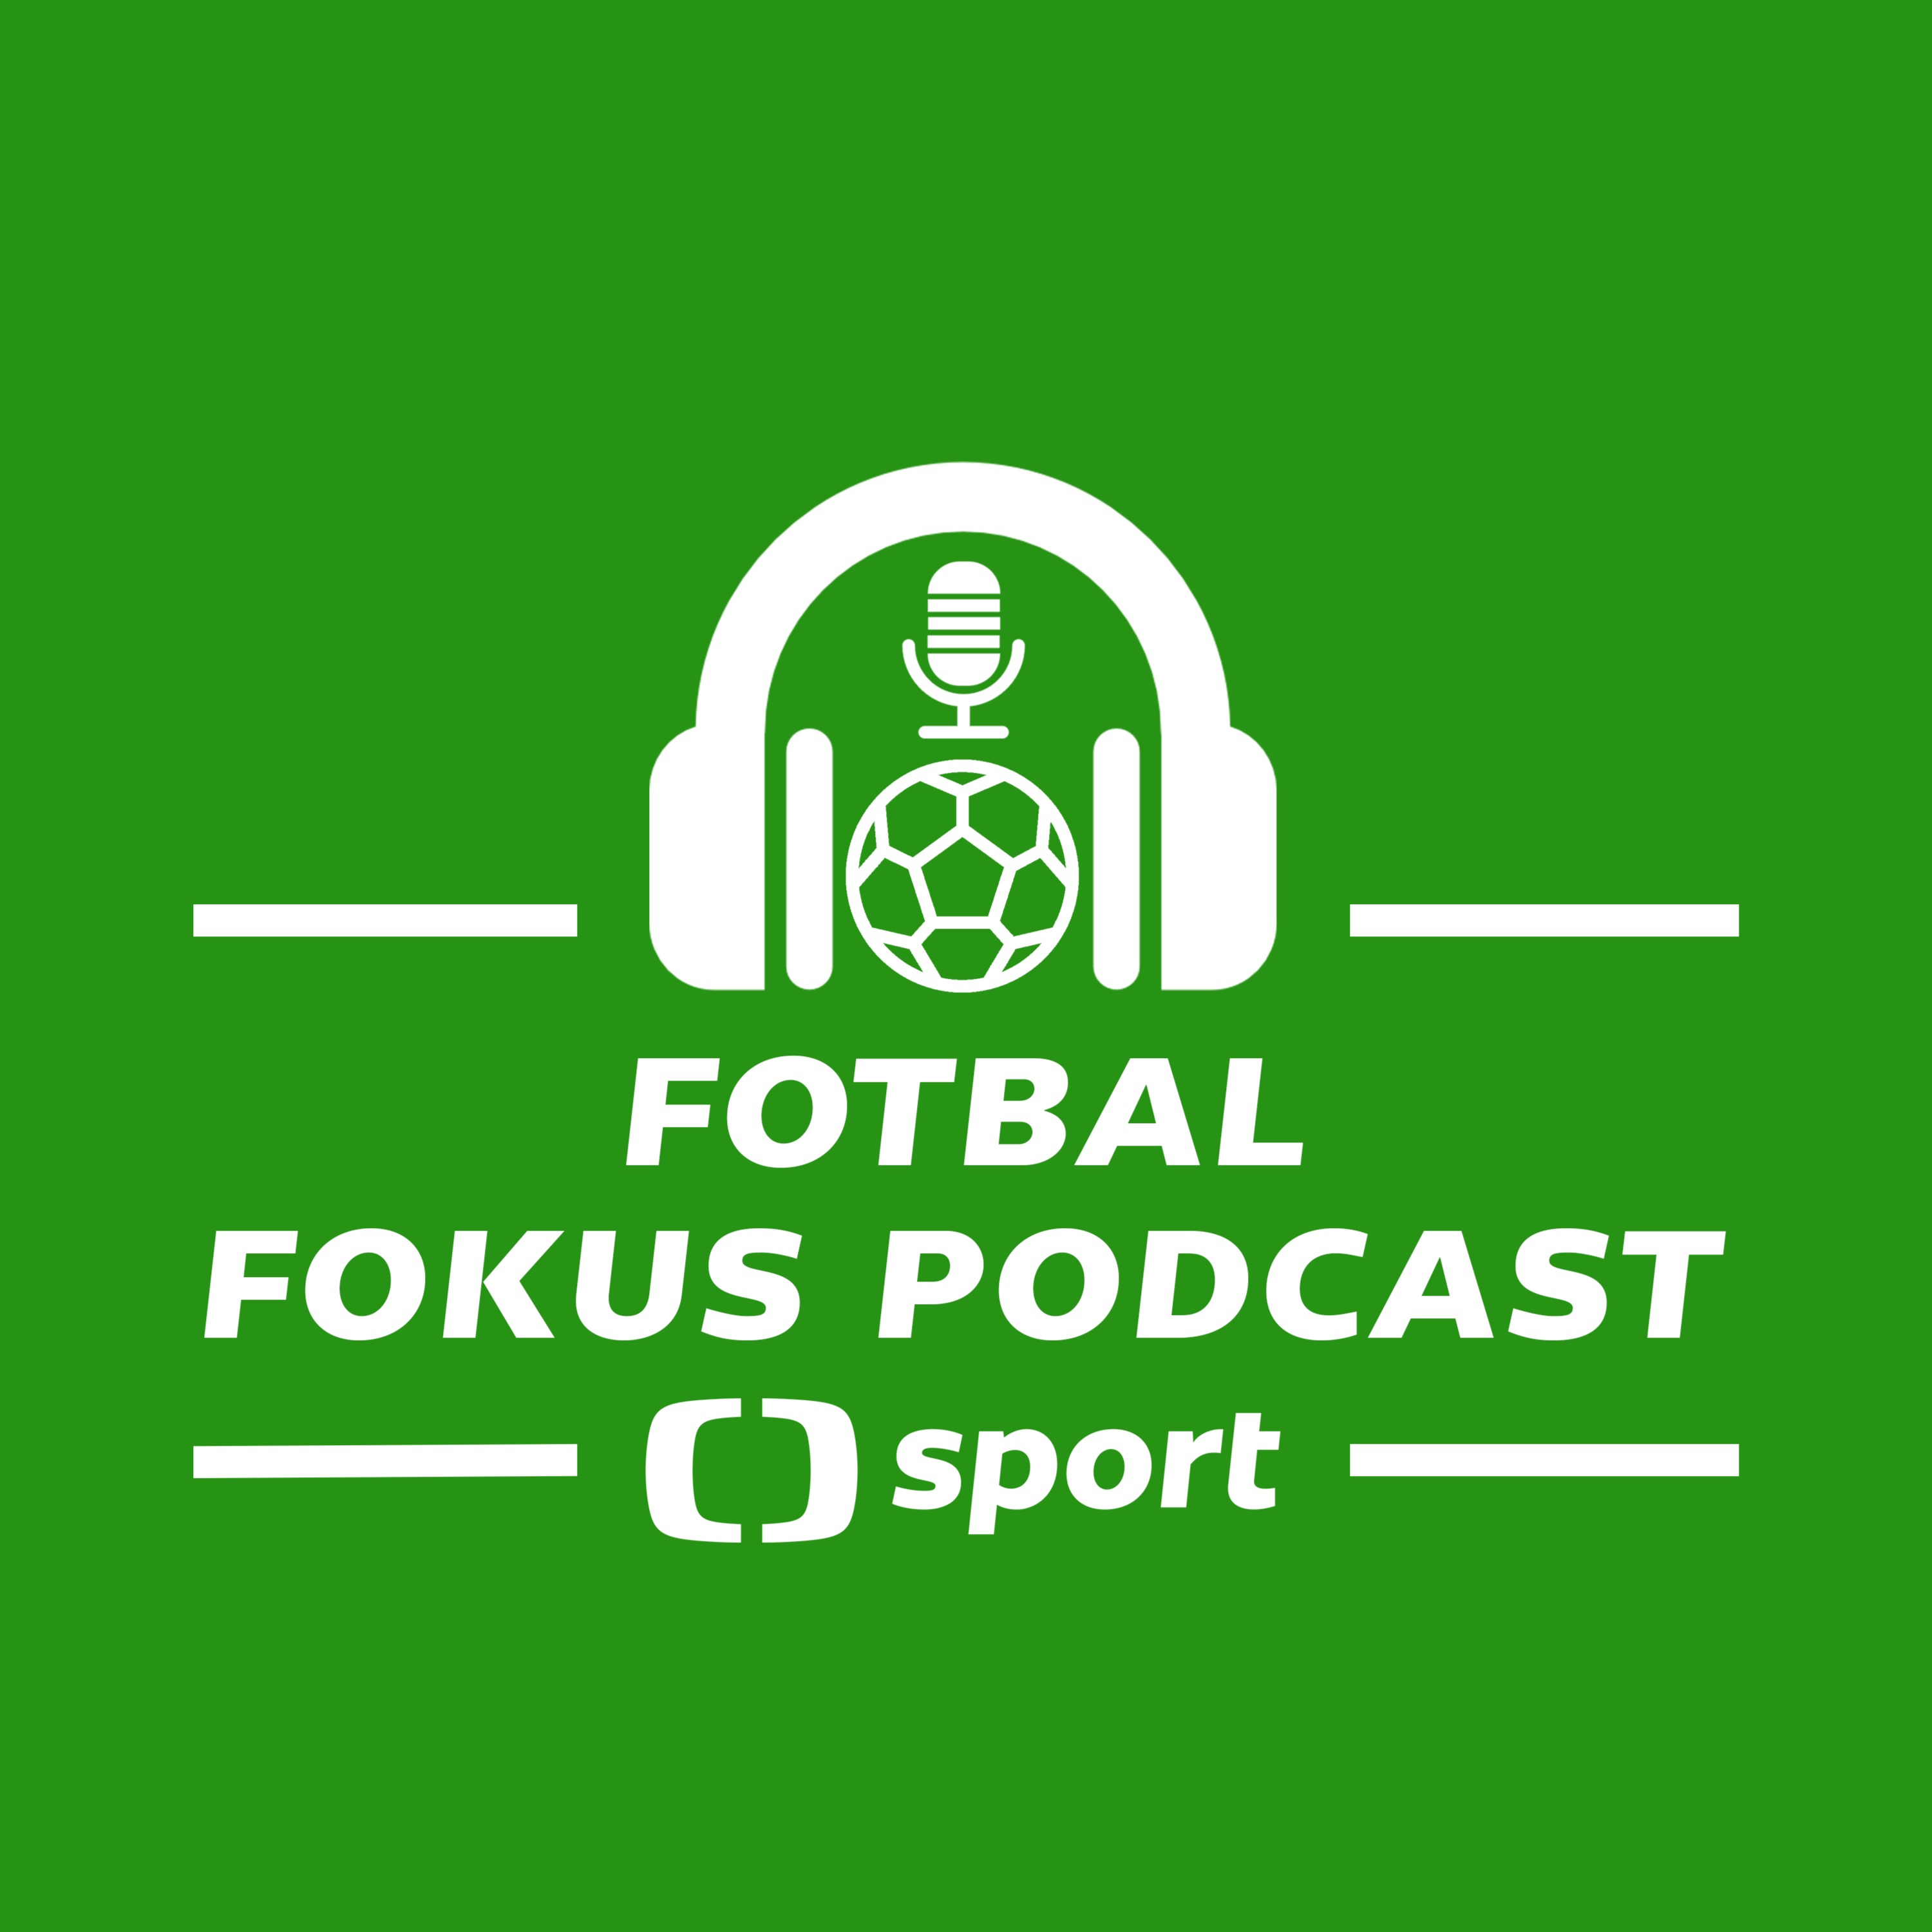 Fotbal fokus podcast: České pažity, pražská 